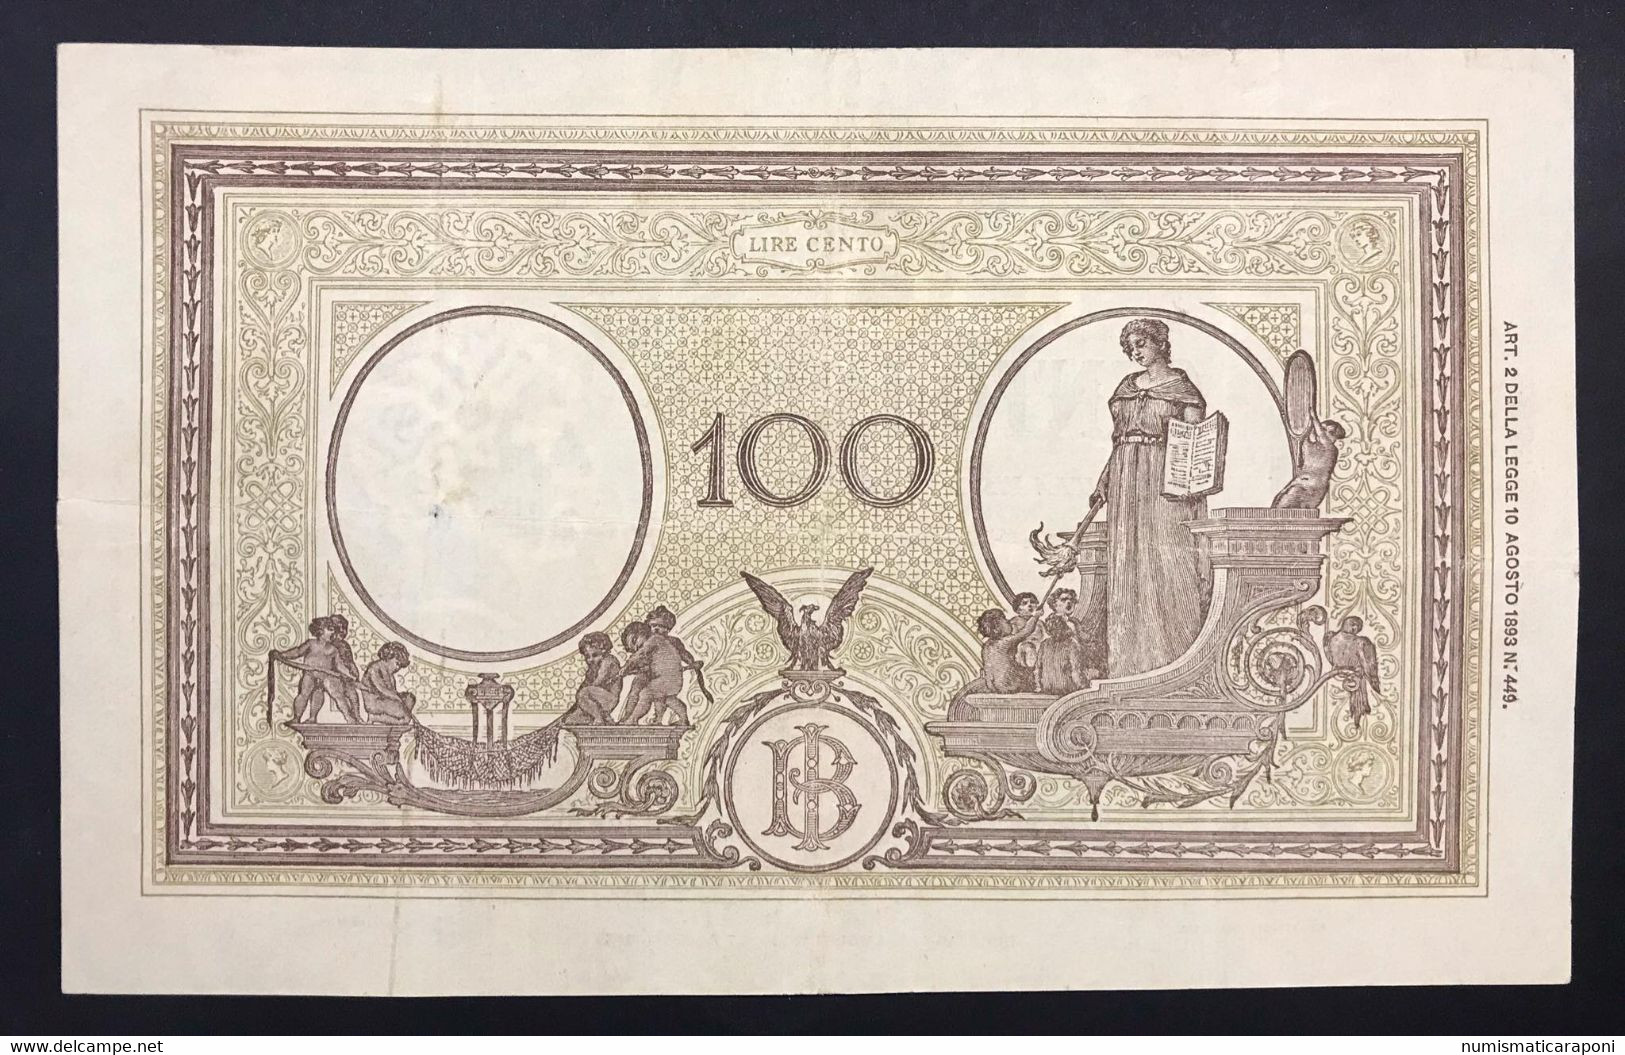 100 Lire Grande B ( B.I.) 23 08 1943 Bb+ Forellino Nell'ovale   LOTTO 1445 - 100 Liras